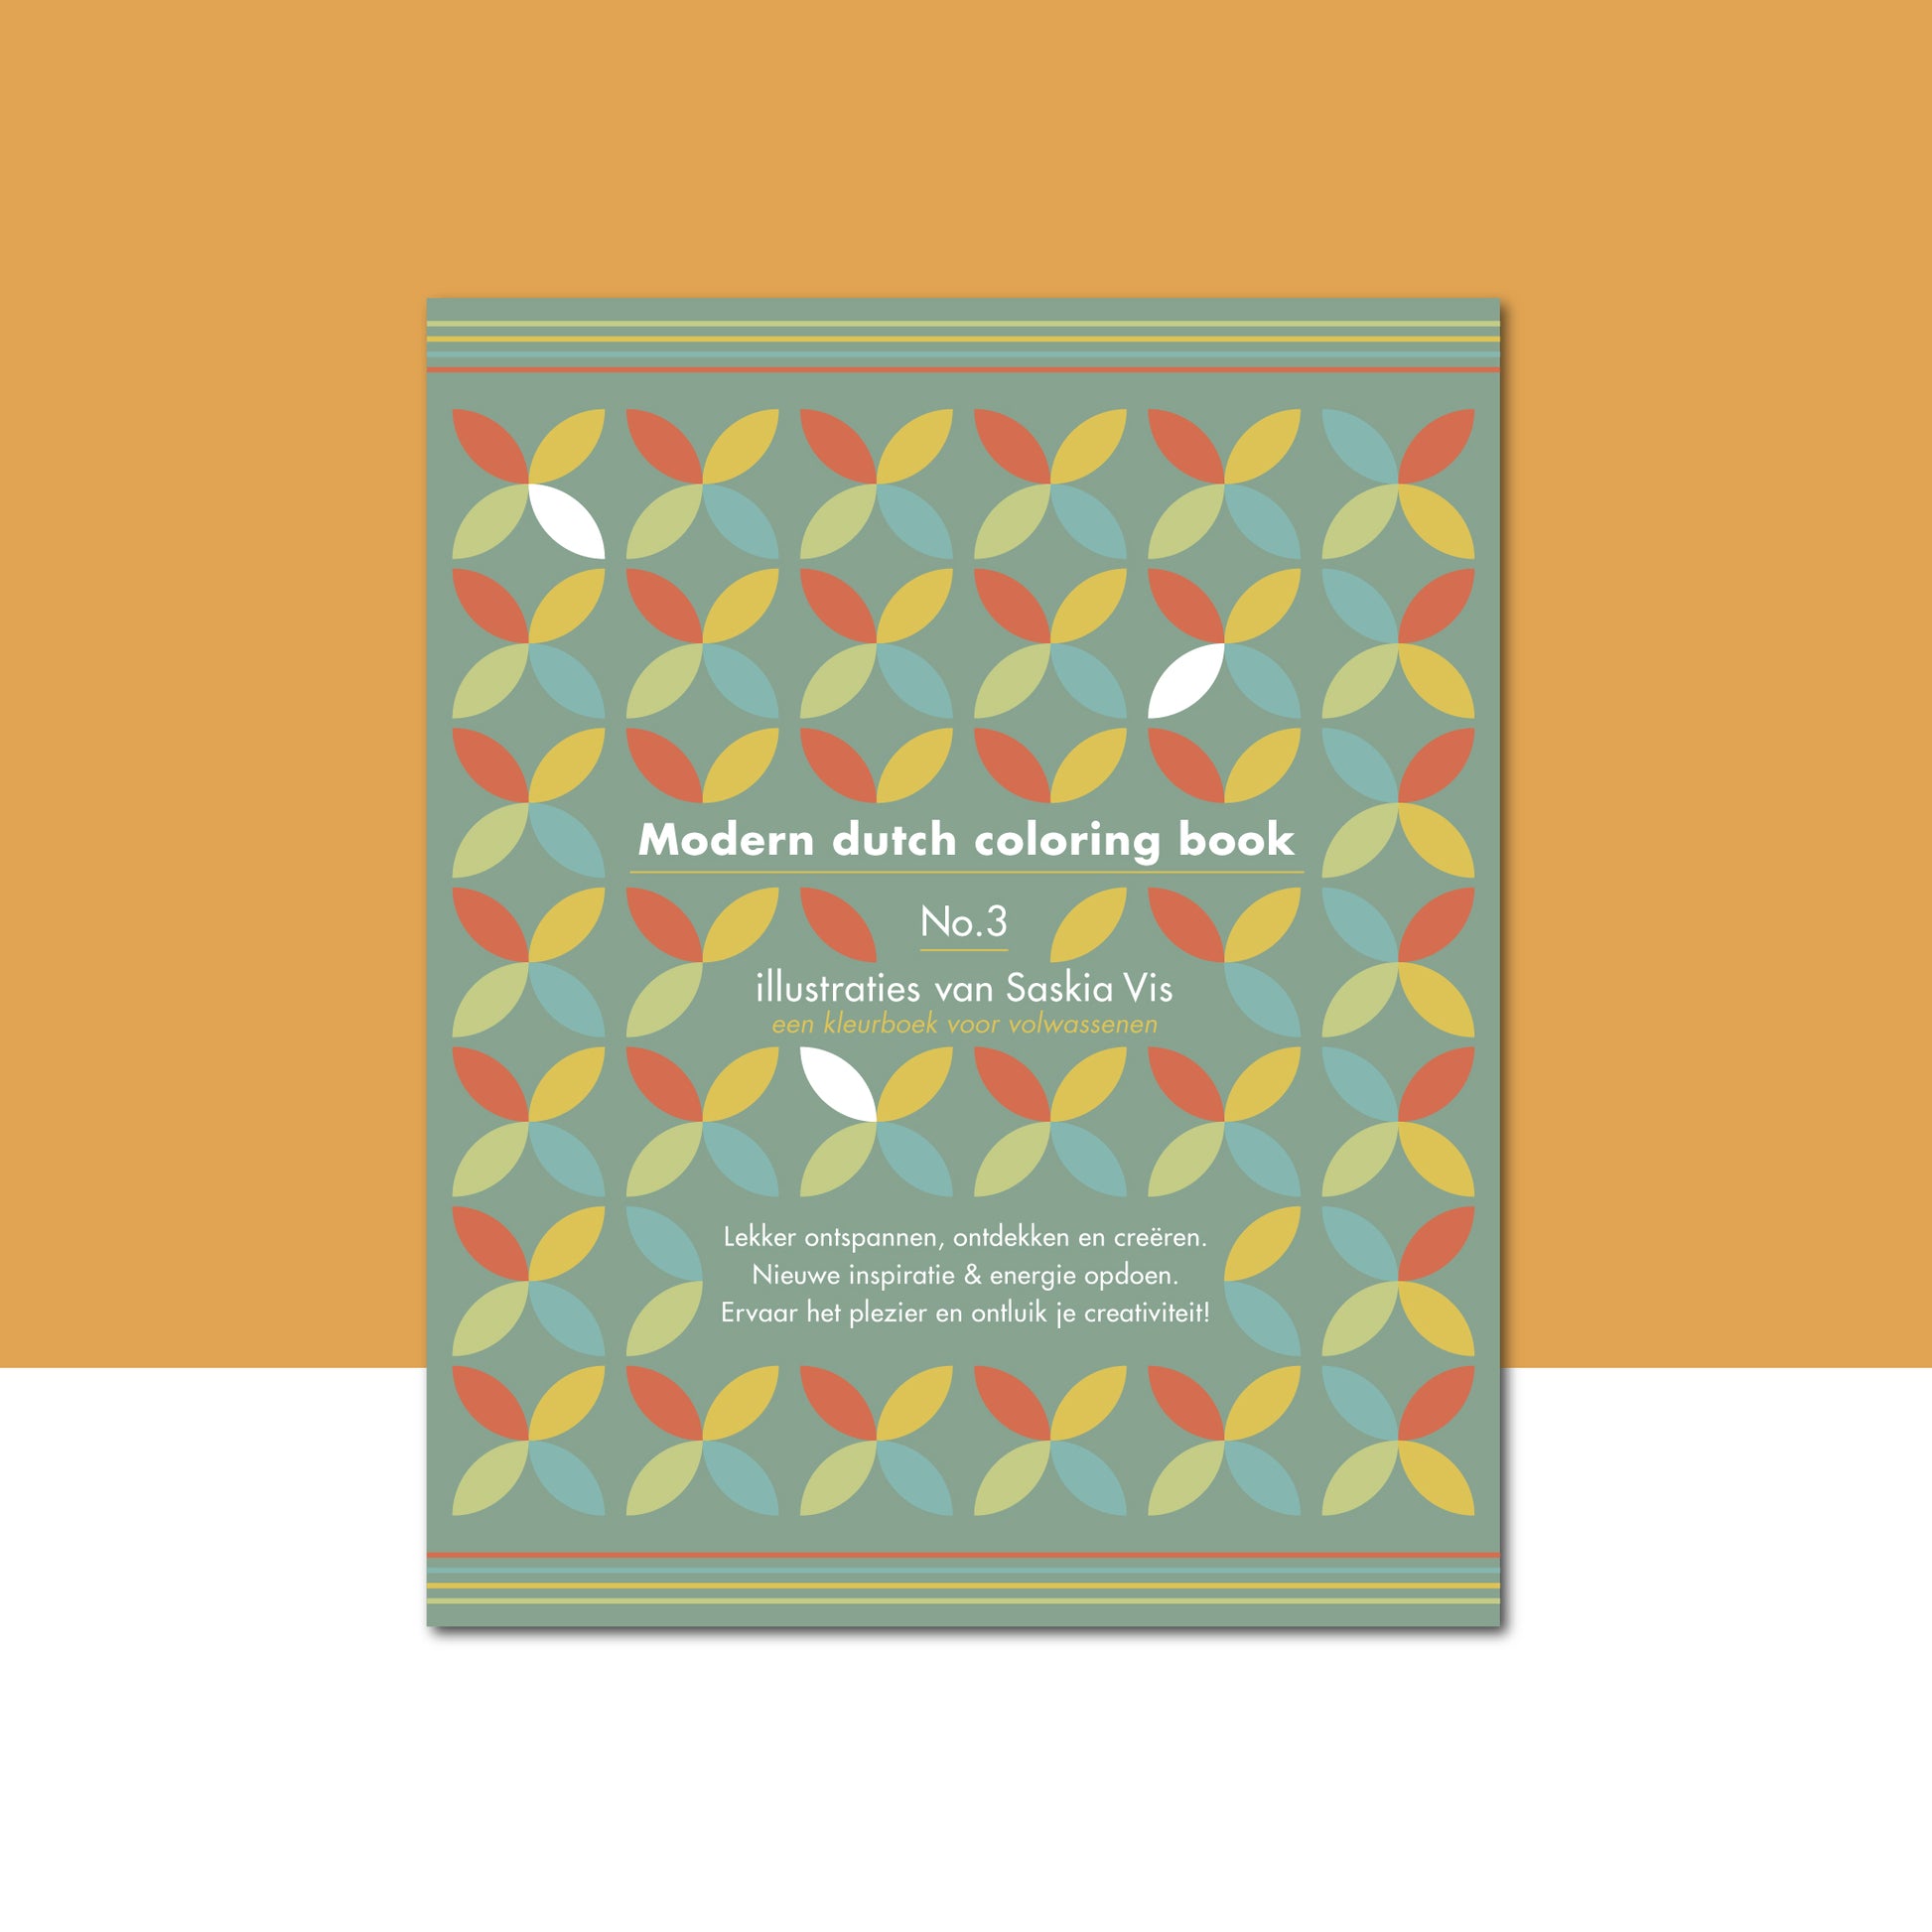 Productafbeelding, "modern dutch coloring book" nummer 3, met de voorzijde van het omslag in beeld